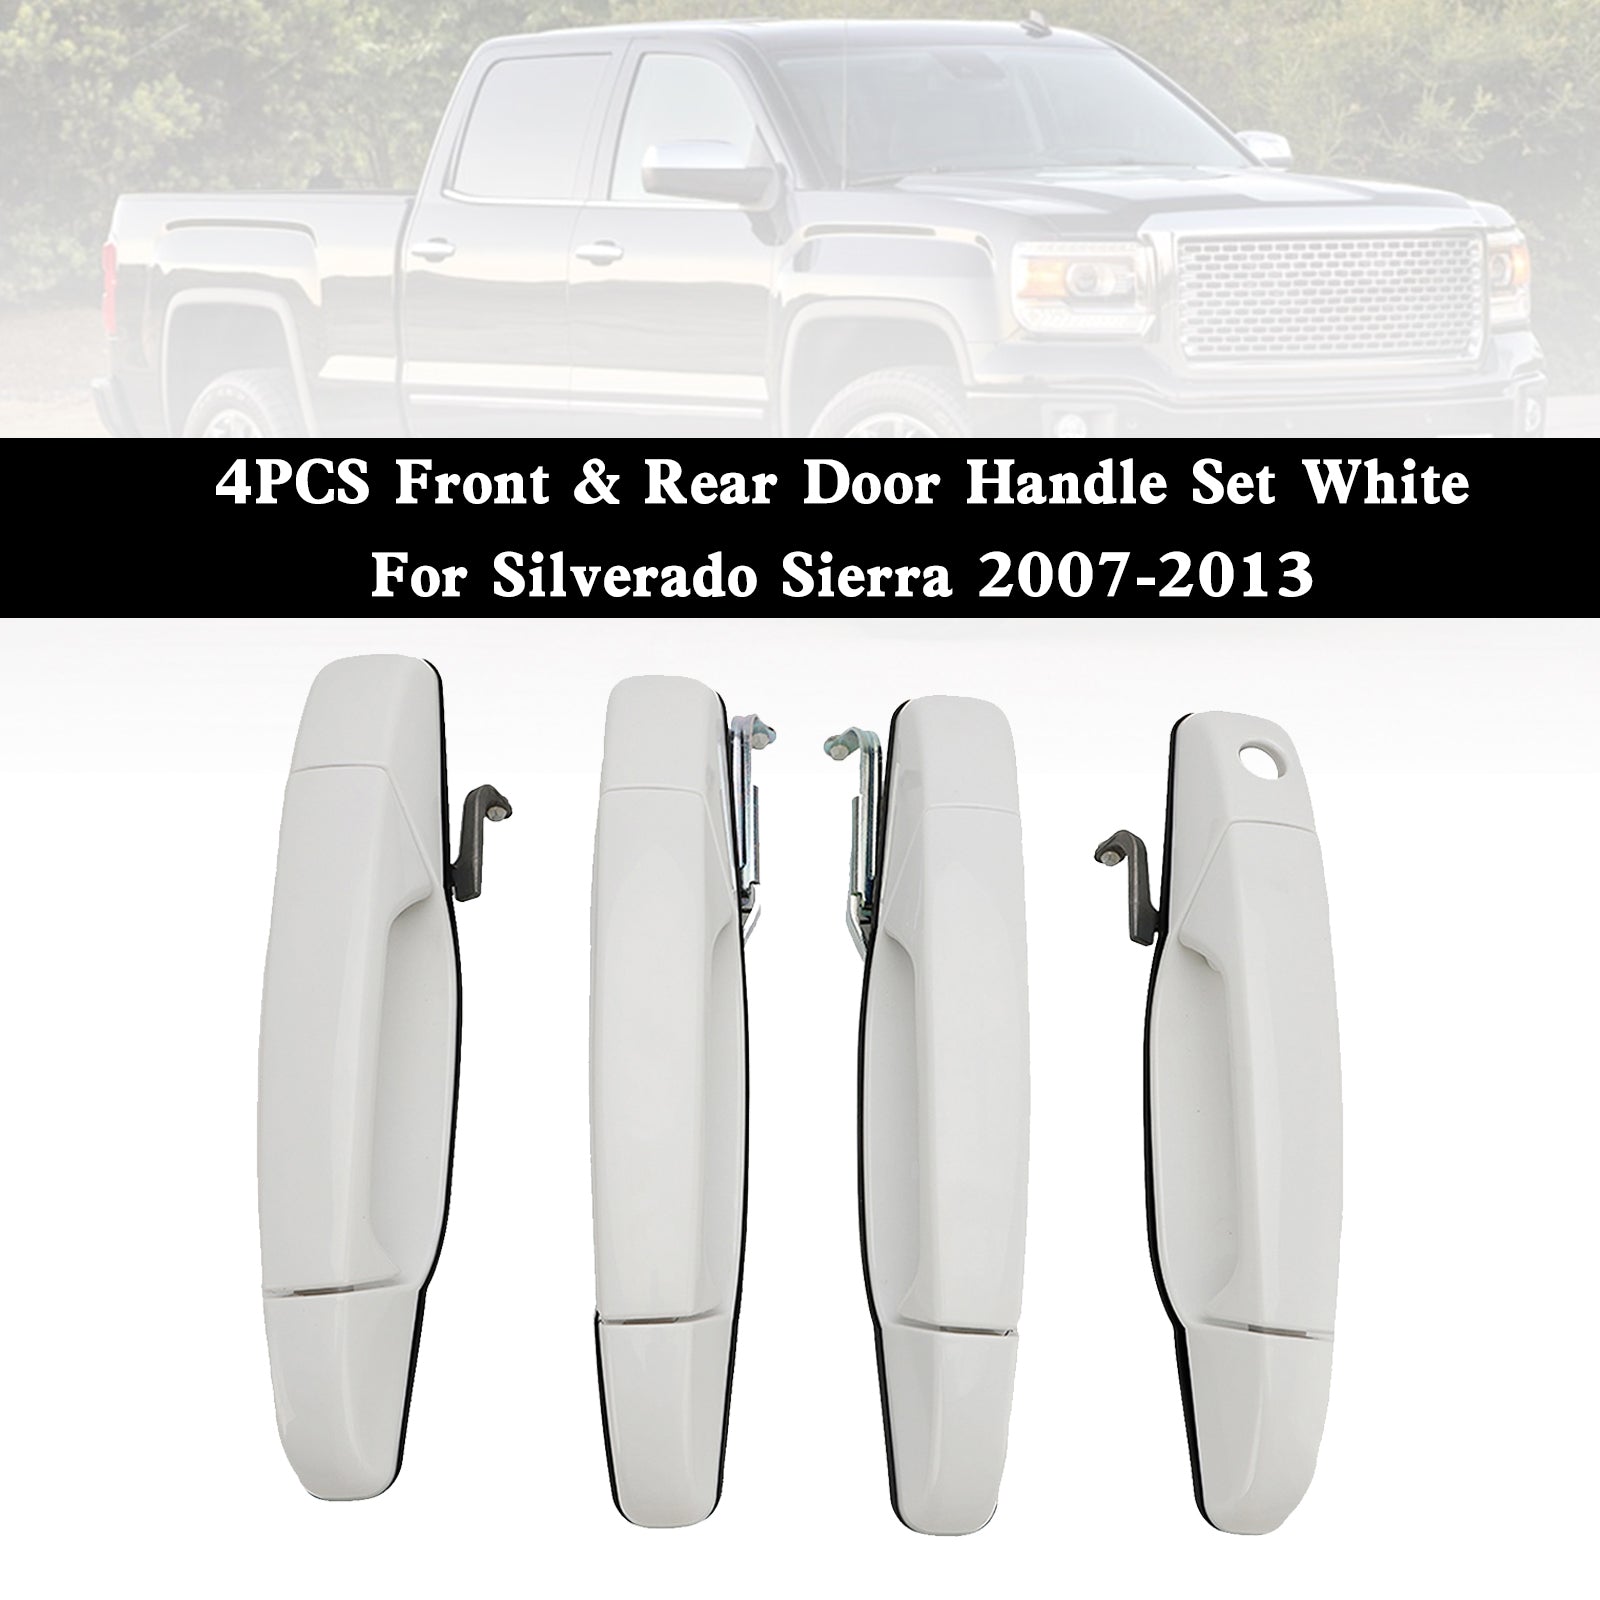 Silverado Sierra 2007-2013 Juego de 4 manijas de puerta delantera y trasera, color blanco